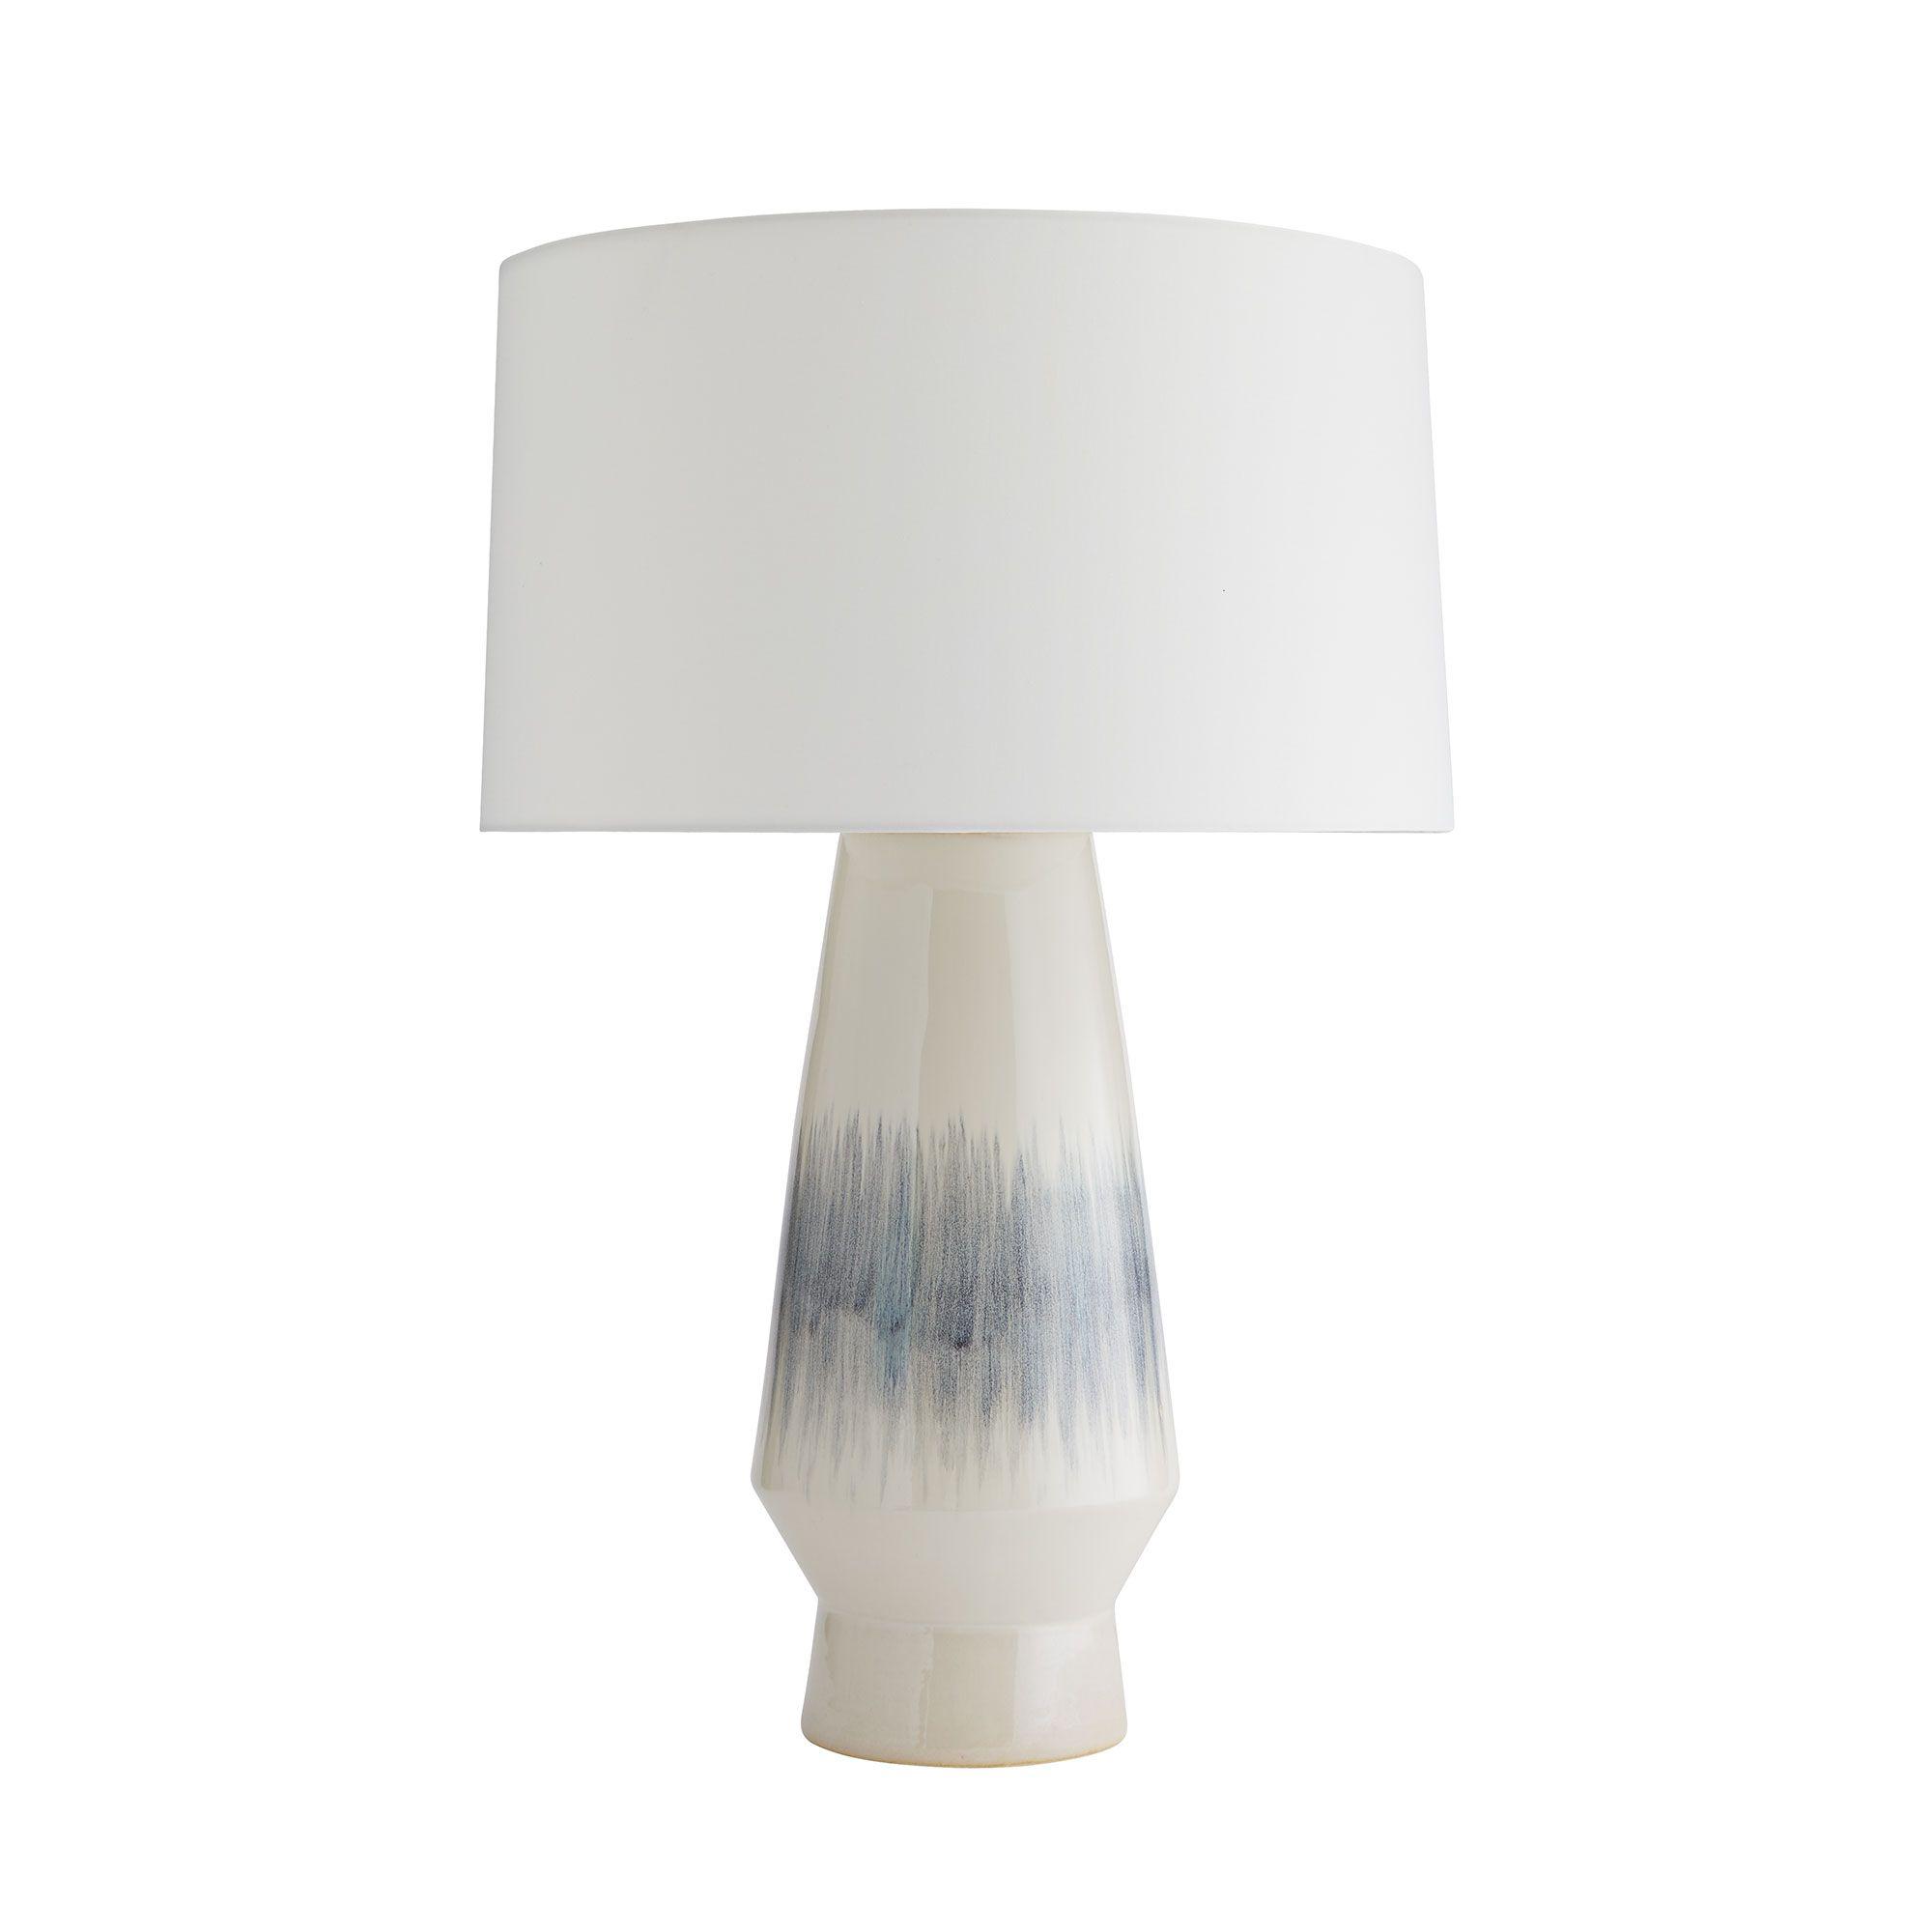 Купить Настольная лампа Howlan Lamp в интернет-магазине roooms.ru